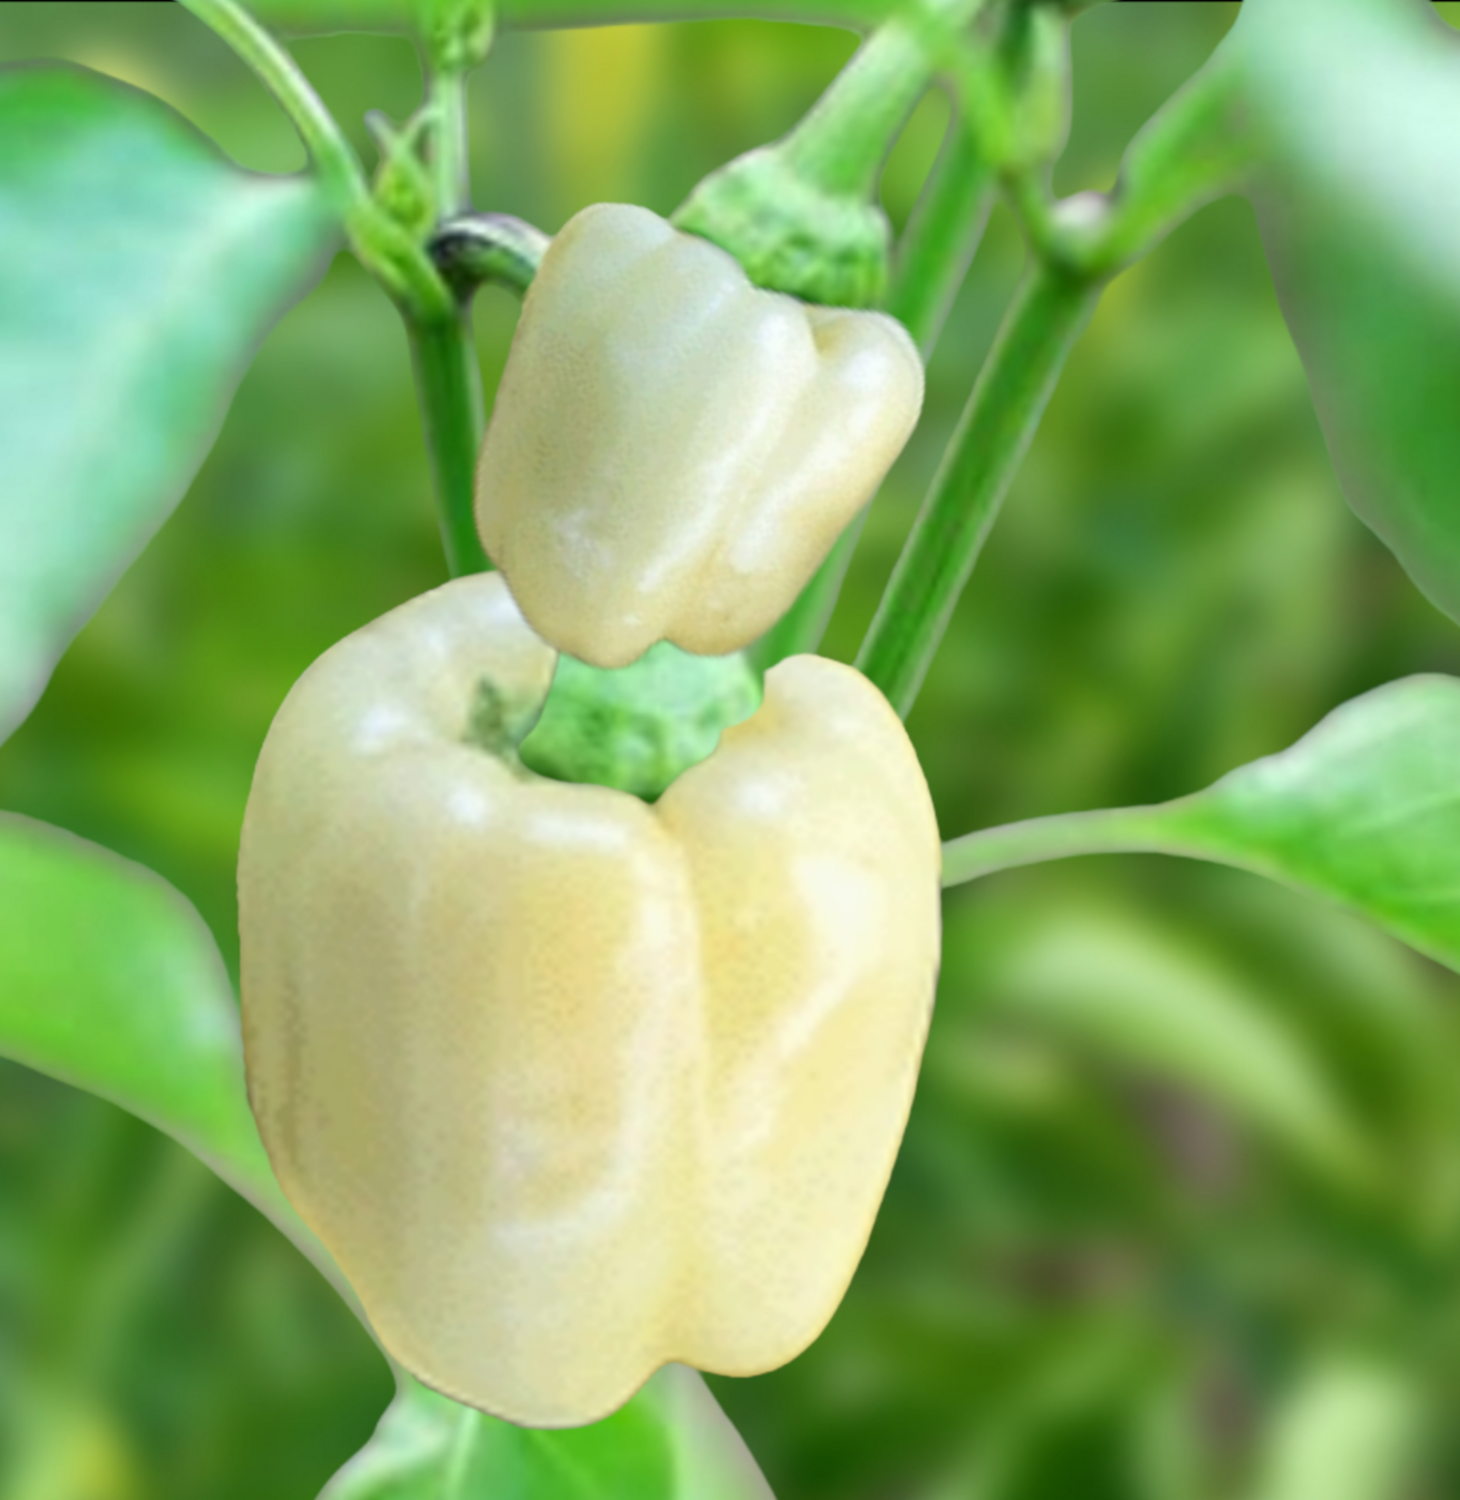 Heirloom Albino Bull Nose Pepper Seeds